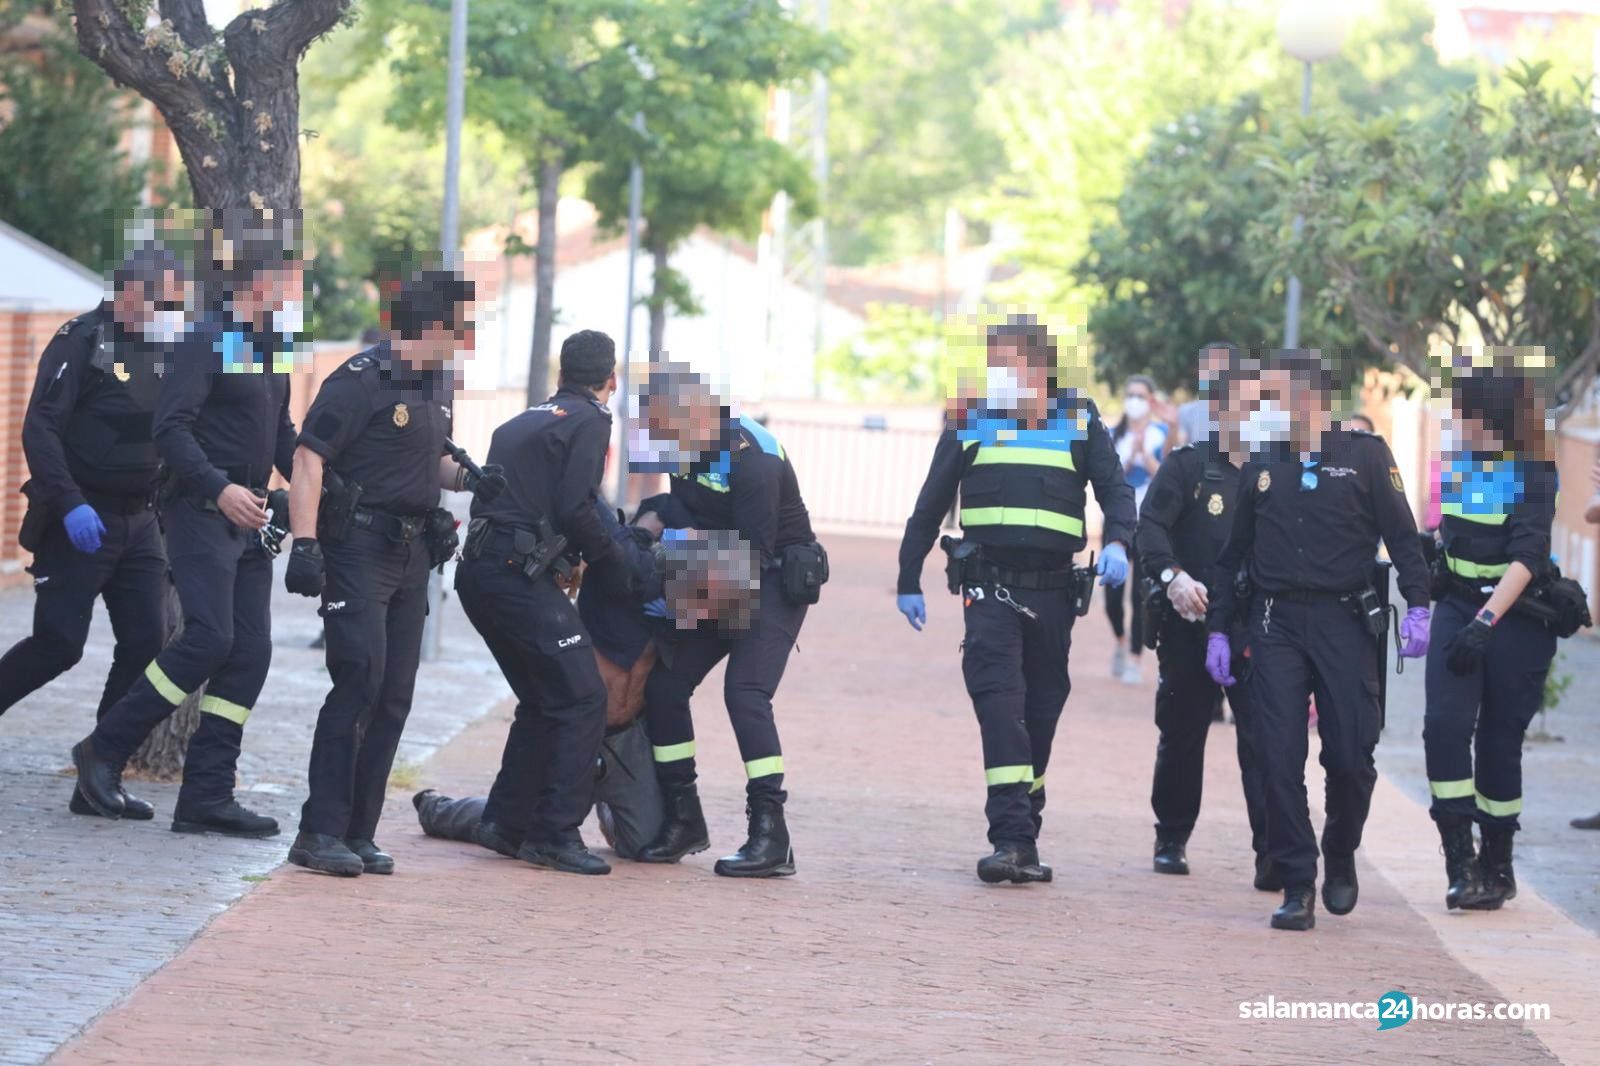  Policia detiene al vecino argentino de Lasalle 6 